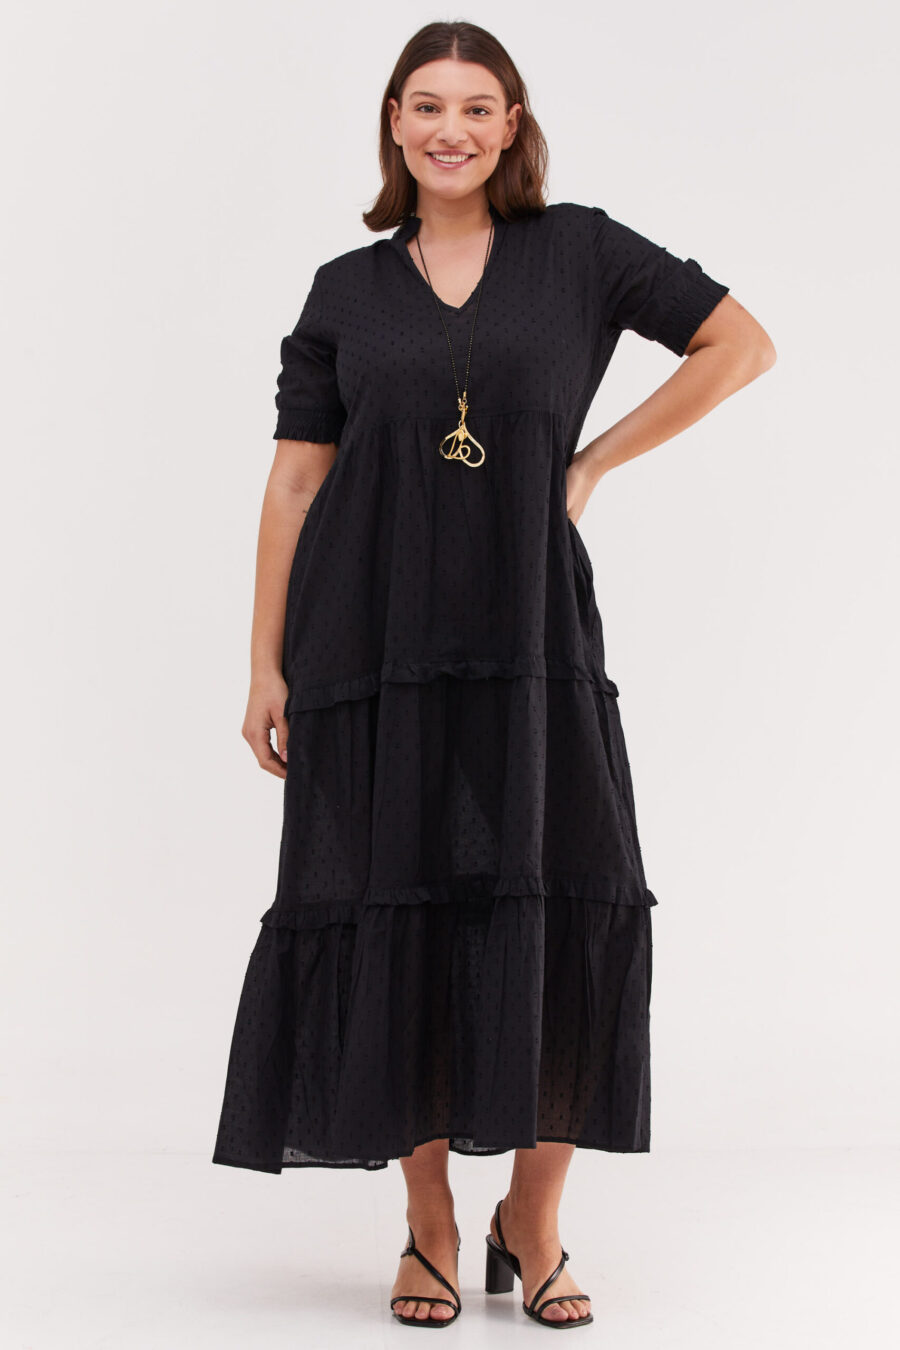 שמלת אפרת | שמלת מקסי בעיצוב ייחודי - שמלה שחורה עם עיגולים עדינים בבד שיוצרים טקסטורה מיוחדת